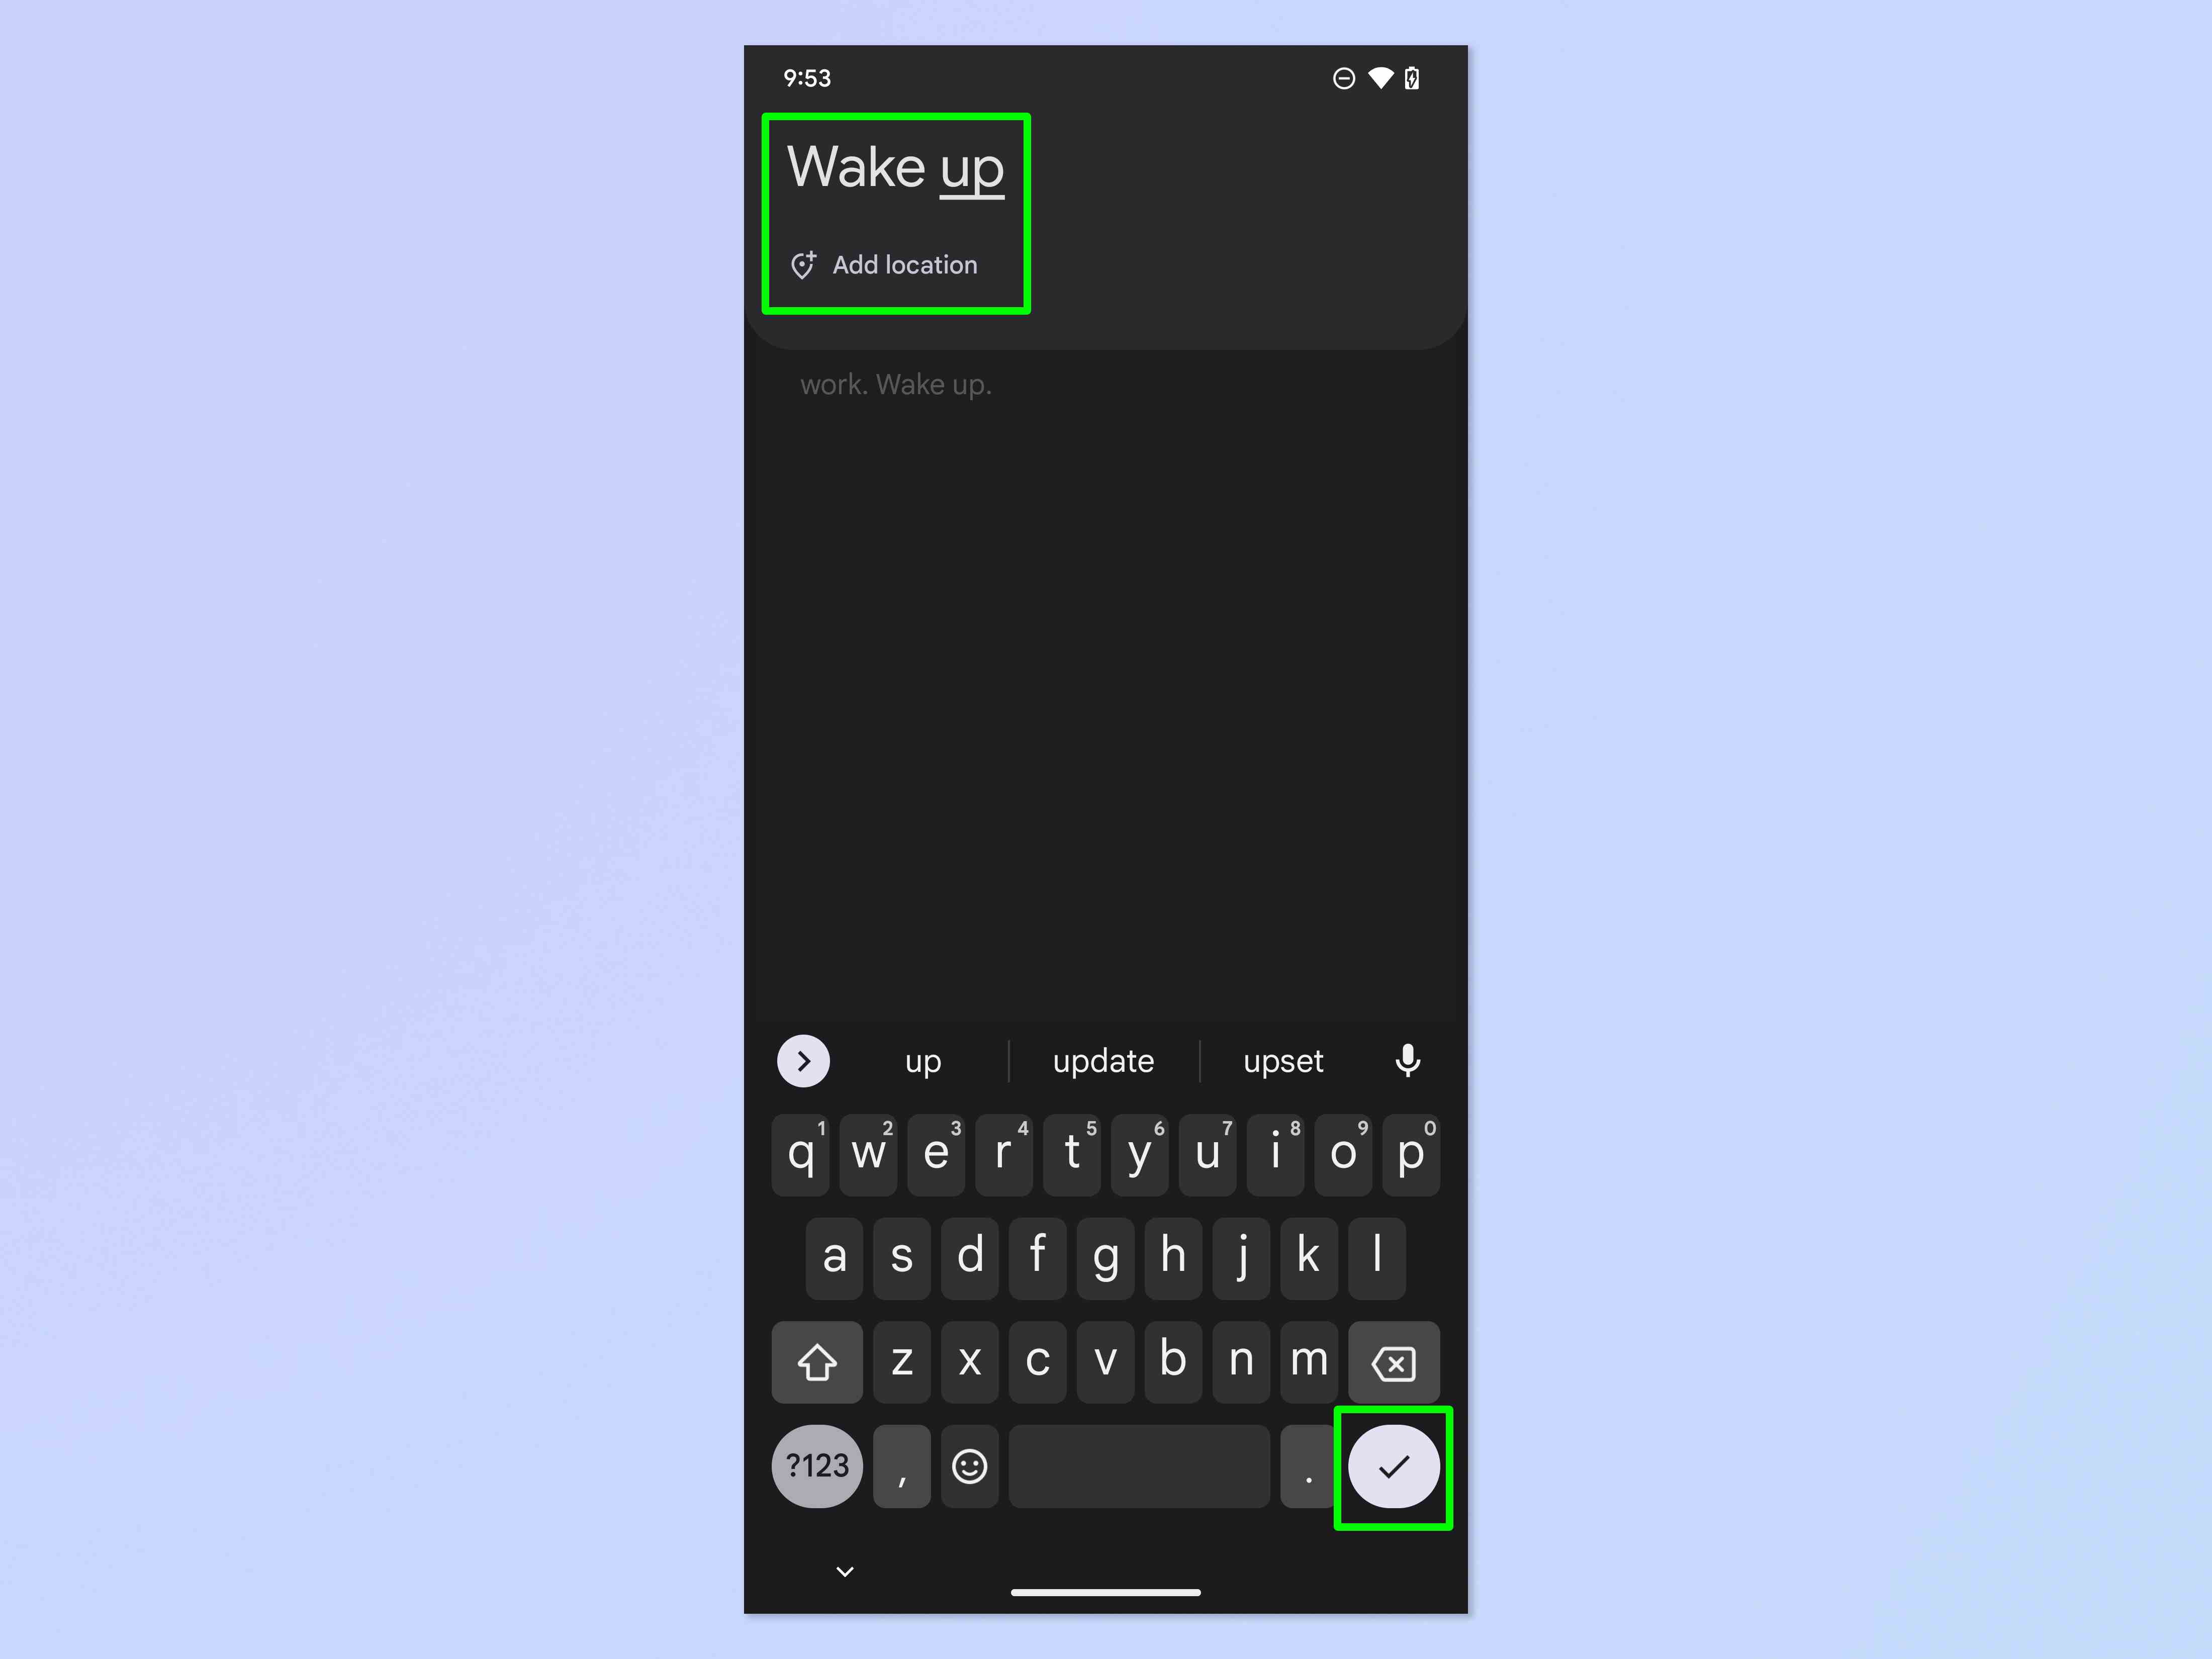 Android'de özel bir alarm sesinin nasıl kaydedileceğini gösteren bir ekran görüntüsü